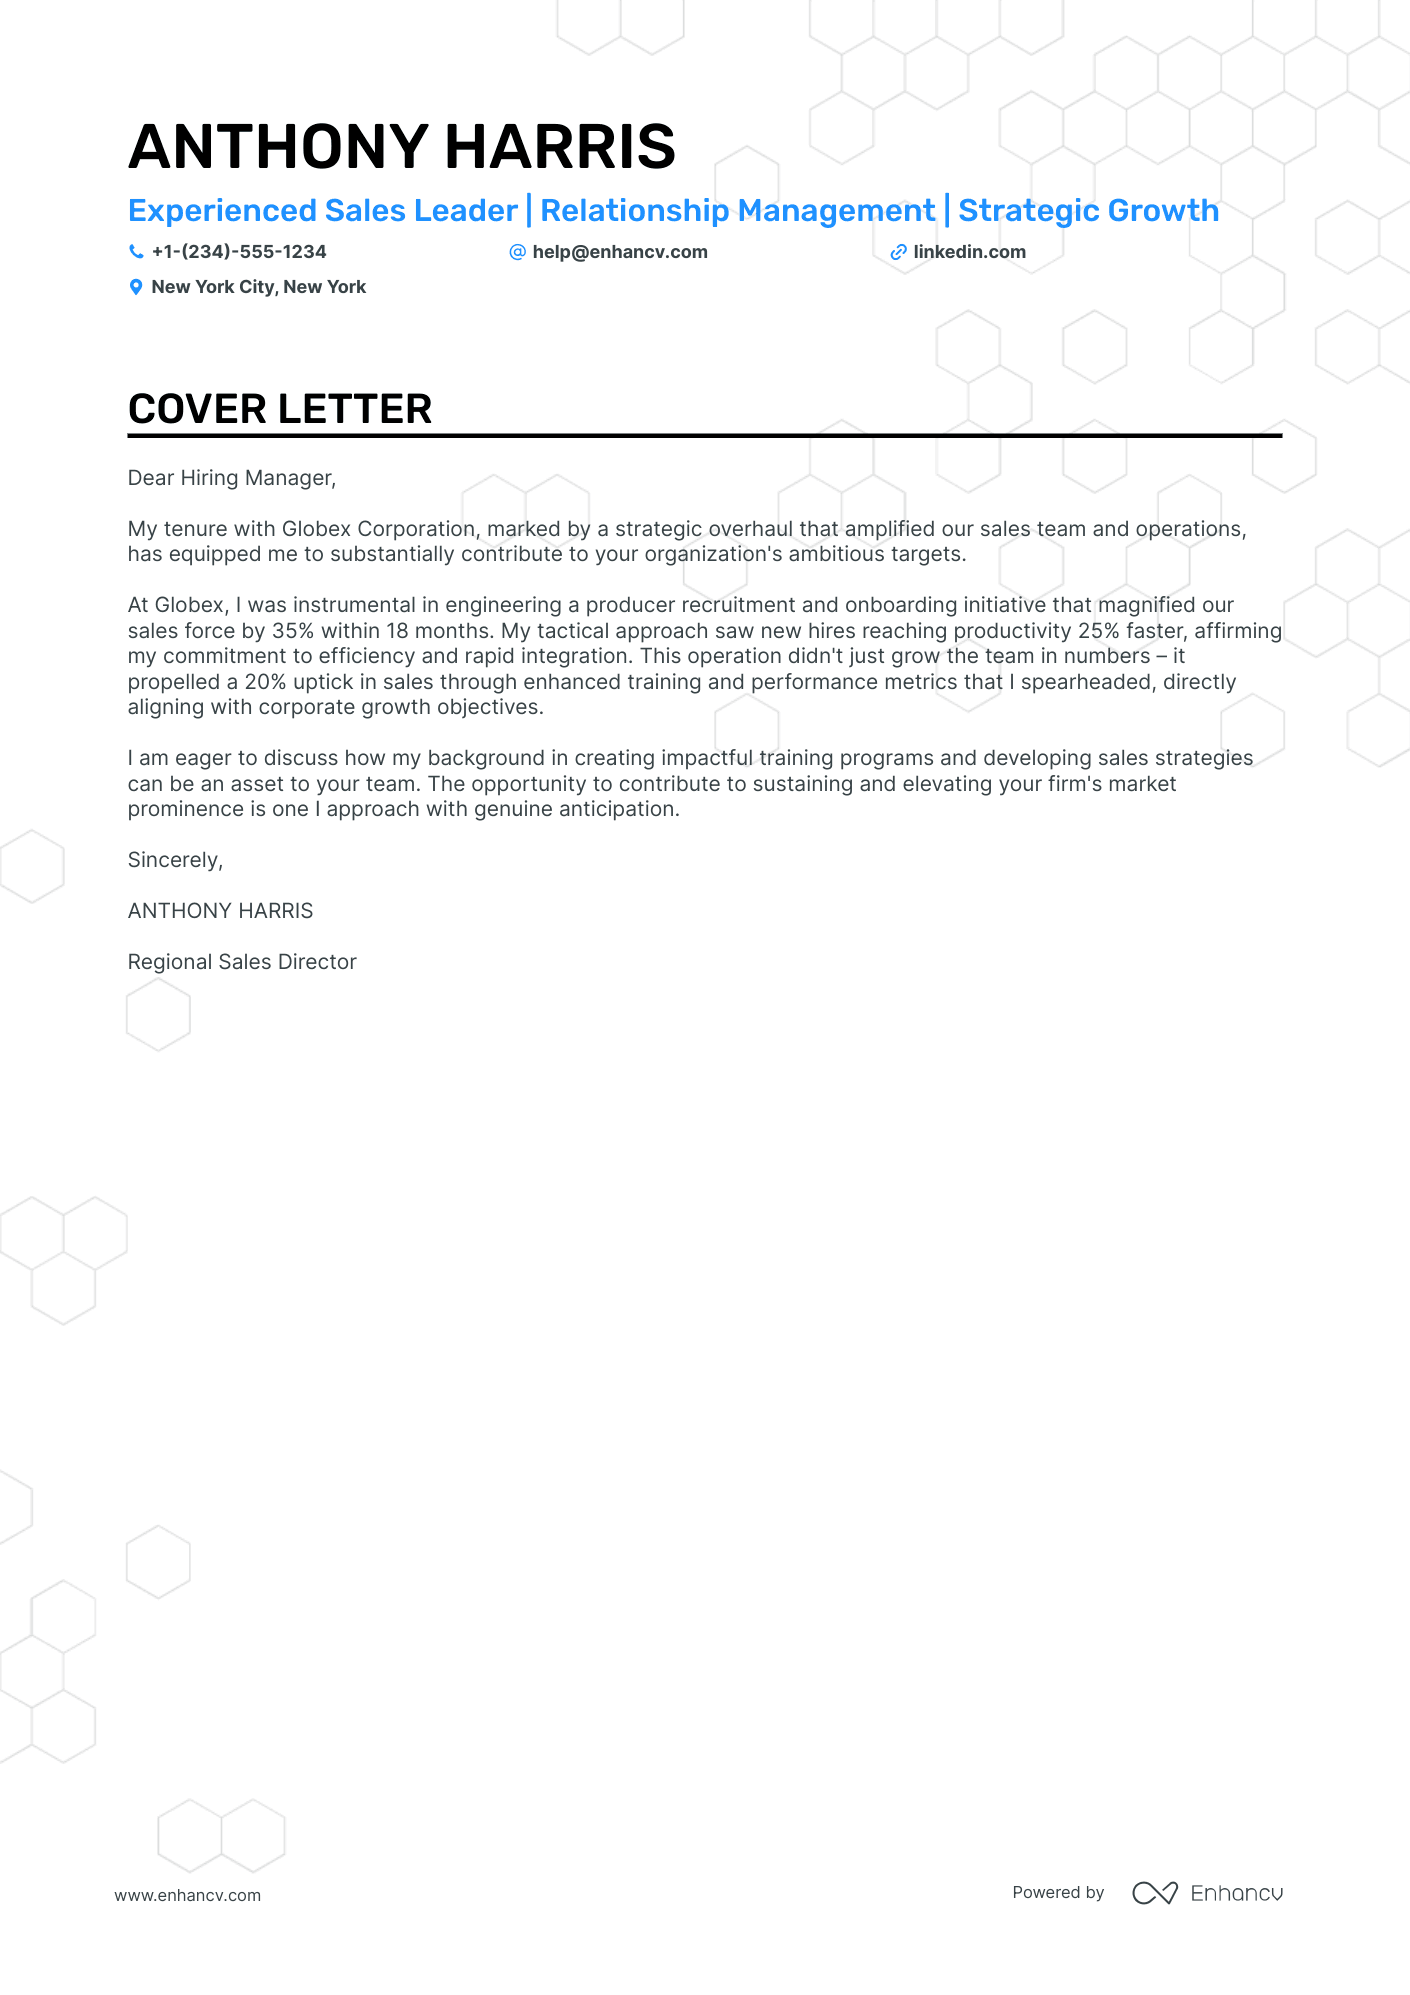 Sales Team Leader cover letter